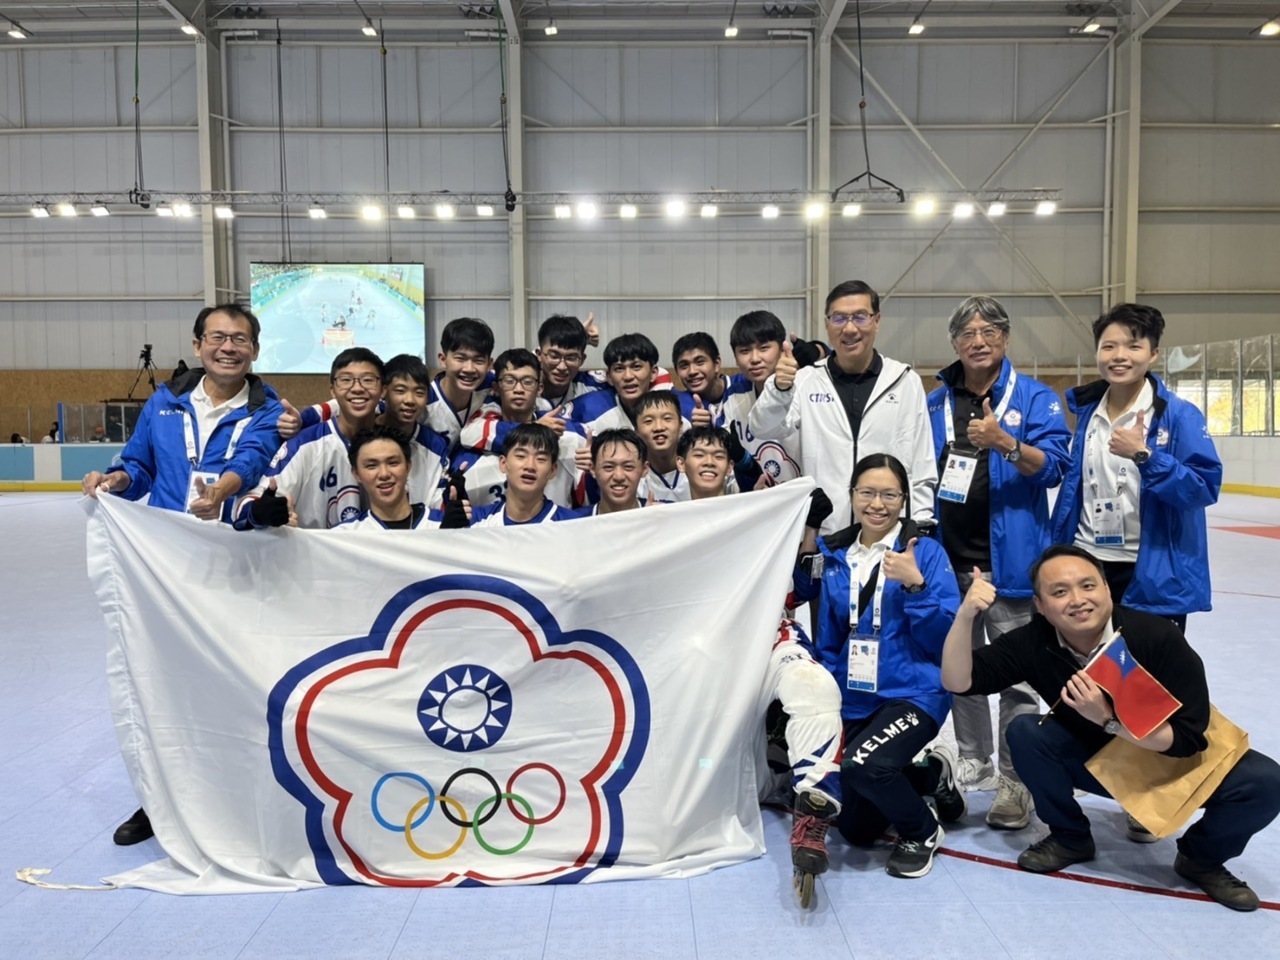 Tại Giải vô địch trượt băng thế giới 2022, đội khúc côn cầu nam của Đài Loan đã đánh bại đội tuyển Mỹ trong trận chung kết và giành huy chương vàng với thành tích thắng liên tiếp 7 trận đấu. (Nguồn ảnh: Sở Thể dục thể thao Đài Loan)